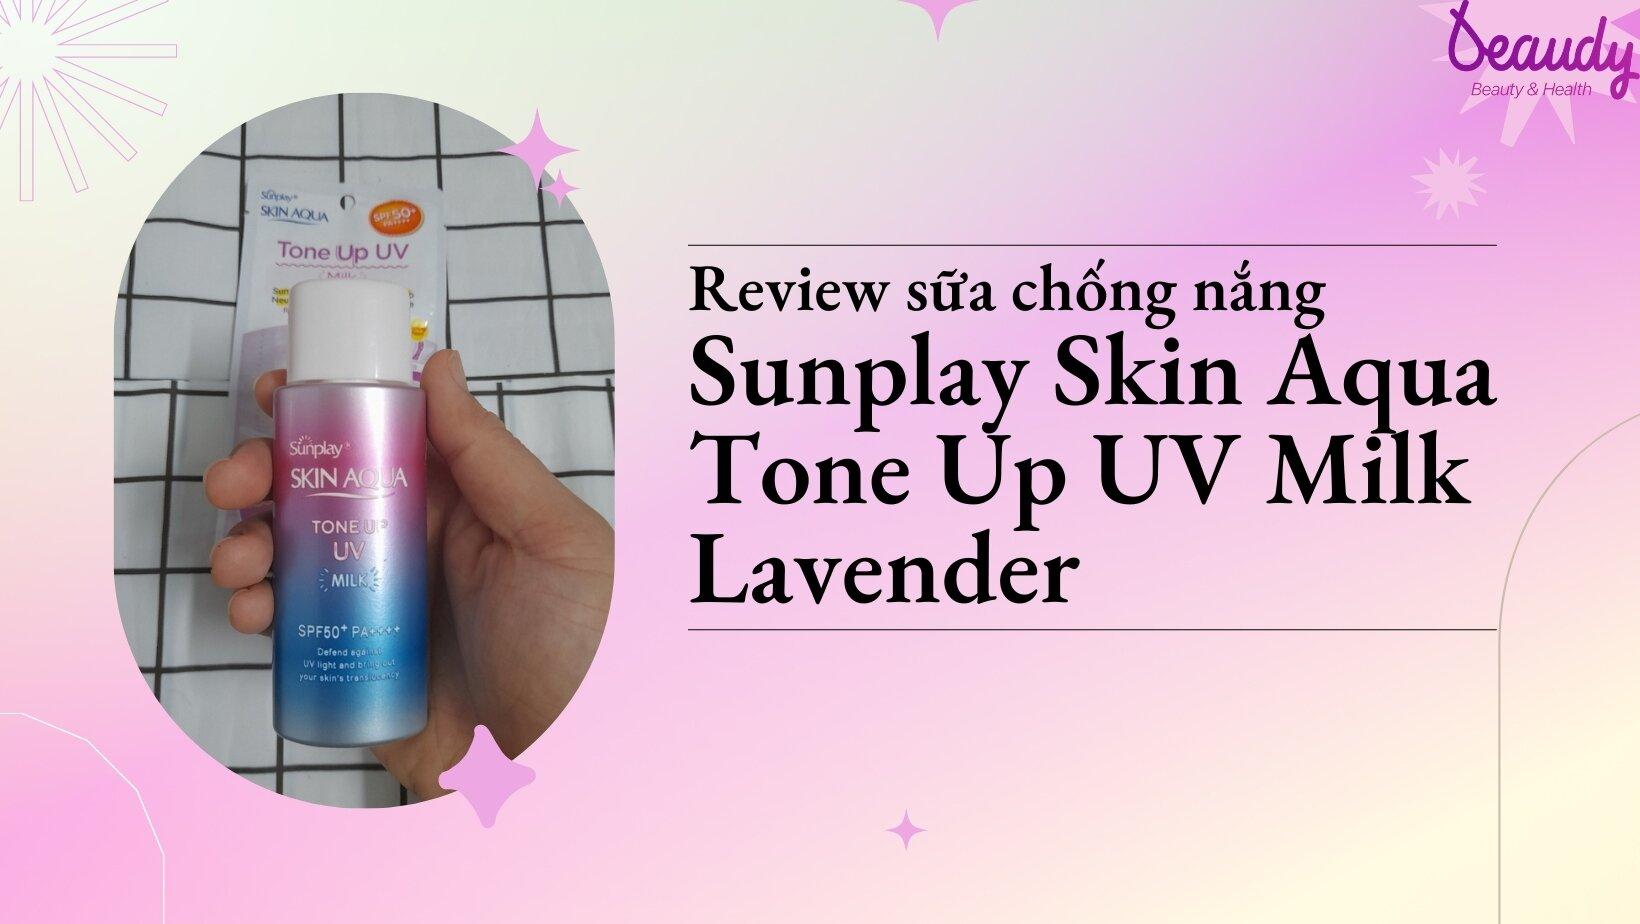 Review sữa chống nắng Sunplay Skin Aqua Tone Up UV Milk Lavender tím: nâng tone trắng hồng, kiềm dầu hiệu quả - Beaudy.vn